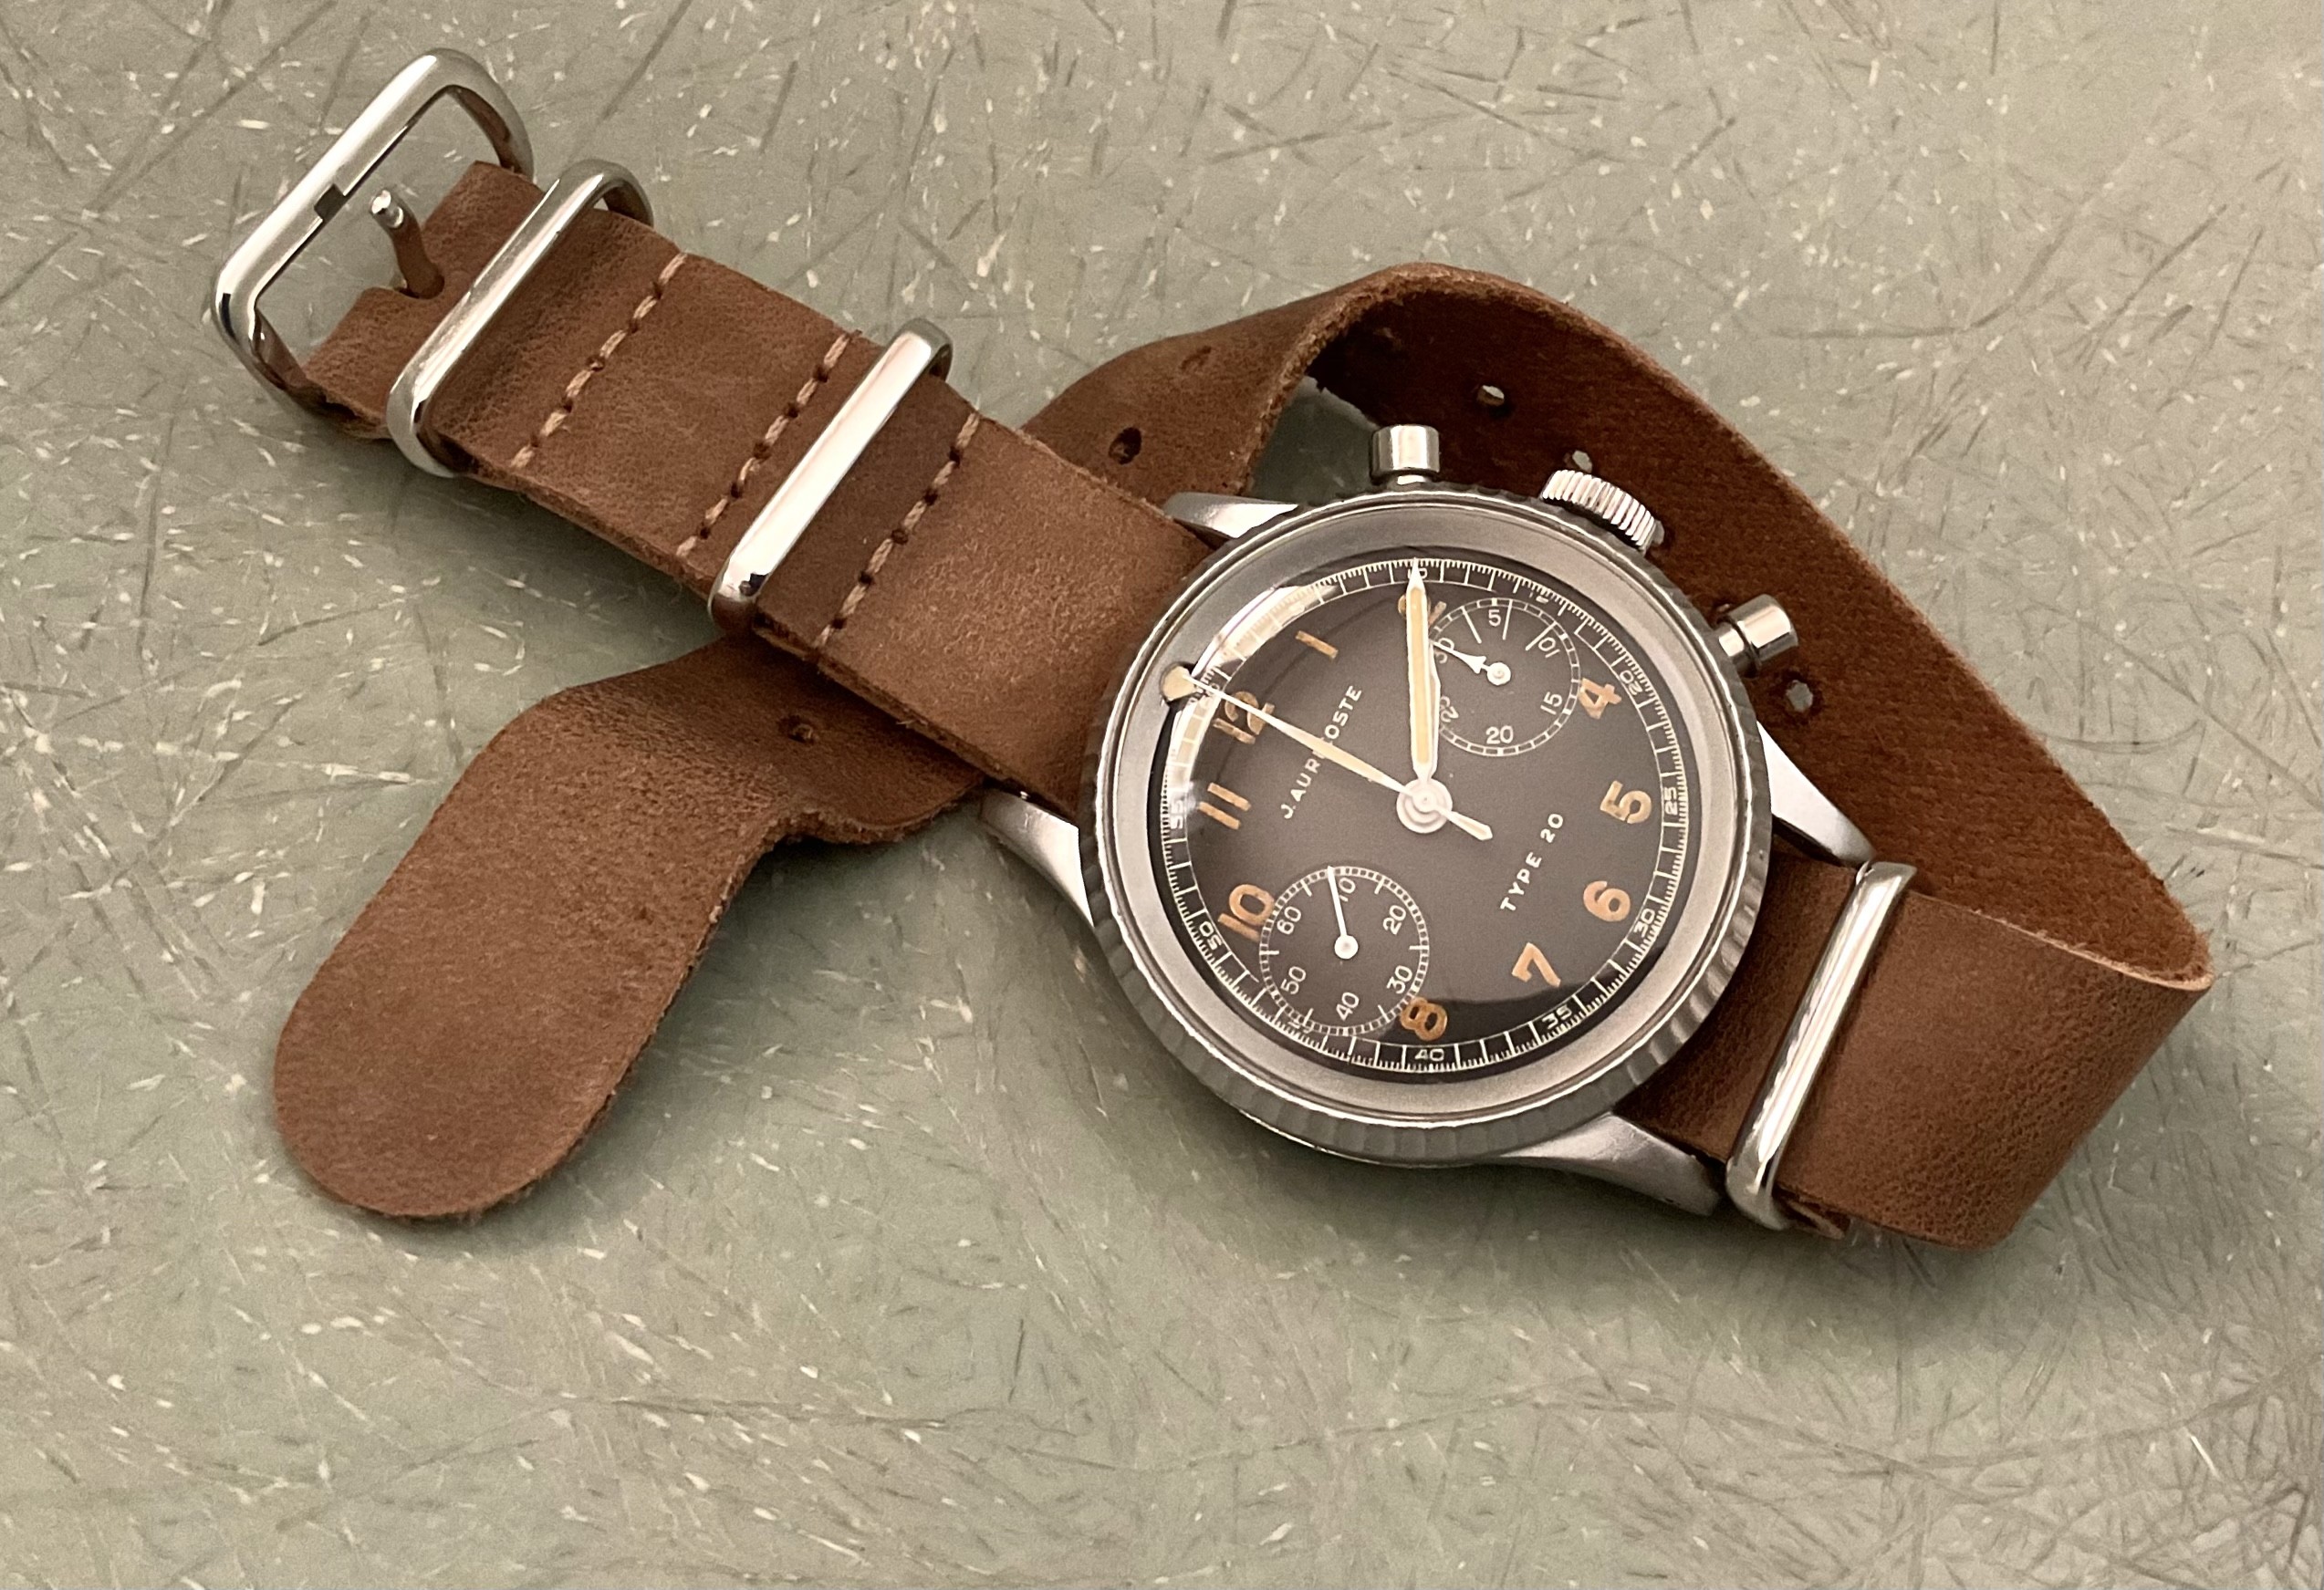 glashutte - Feu de vos montres d'aviateur, ou inspirées du monde aéronautique - Page 9 BA748075-226D-49F3-816E-F5A8C344A91C